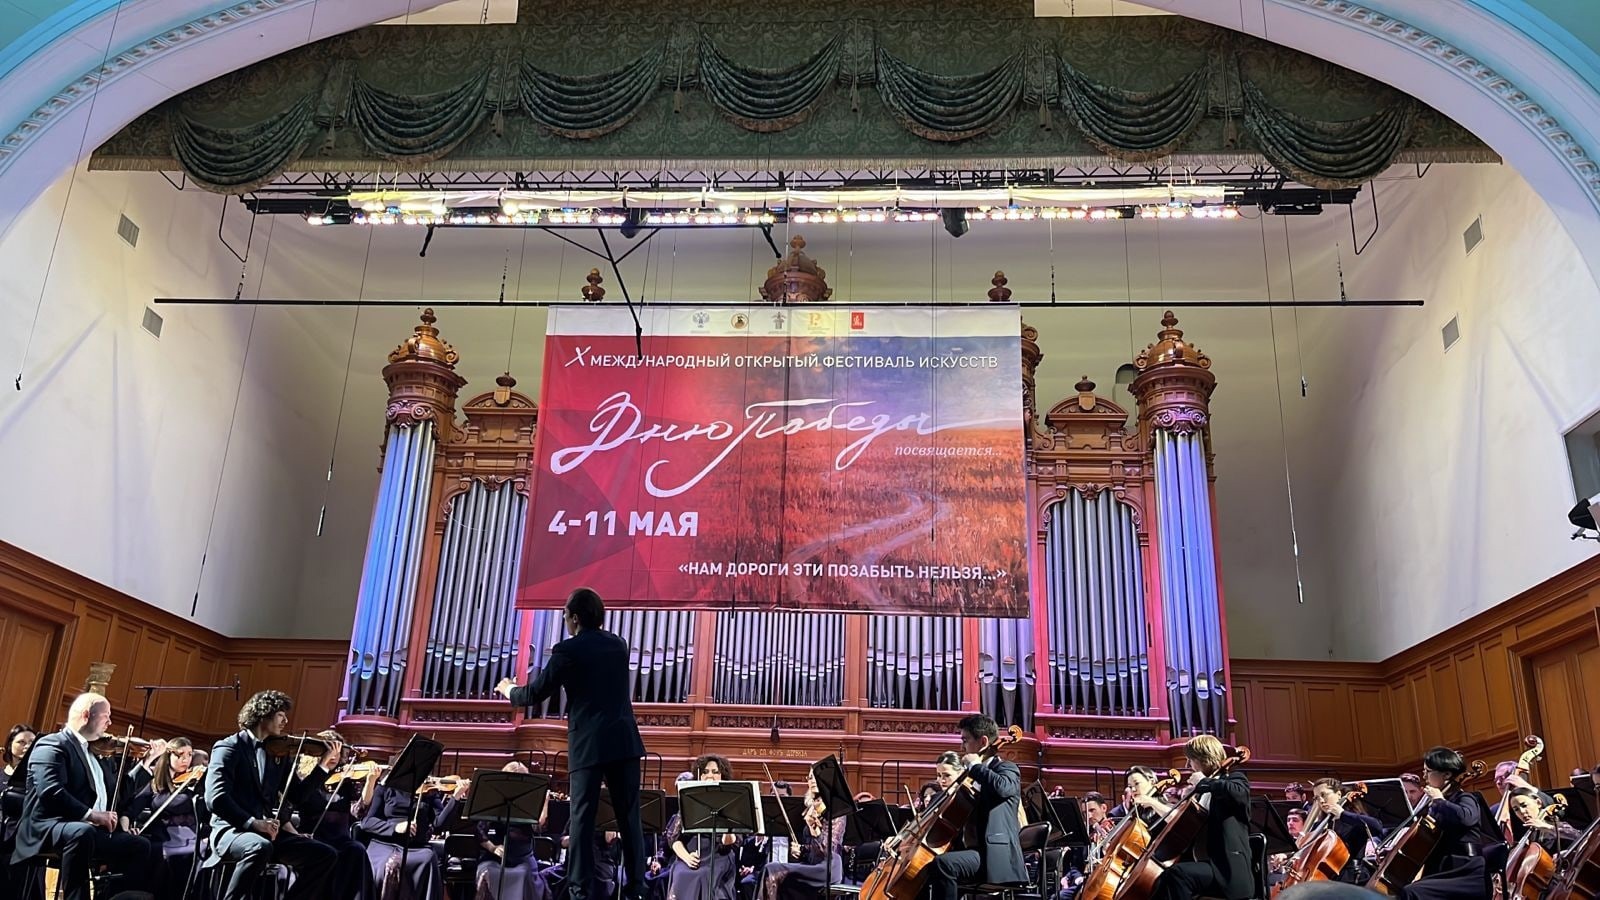 Госоркестр Башкортостана закроет юбилейный фестиваль музыкой Моцарта